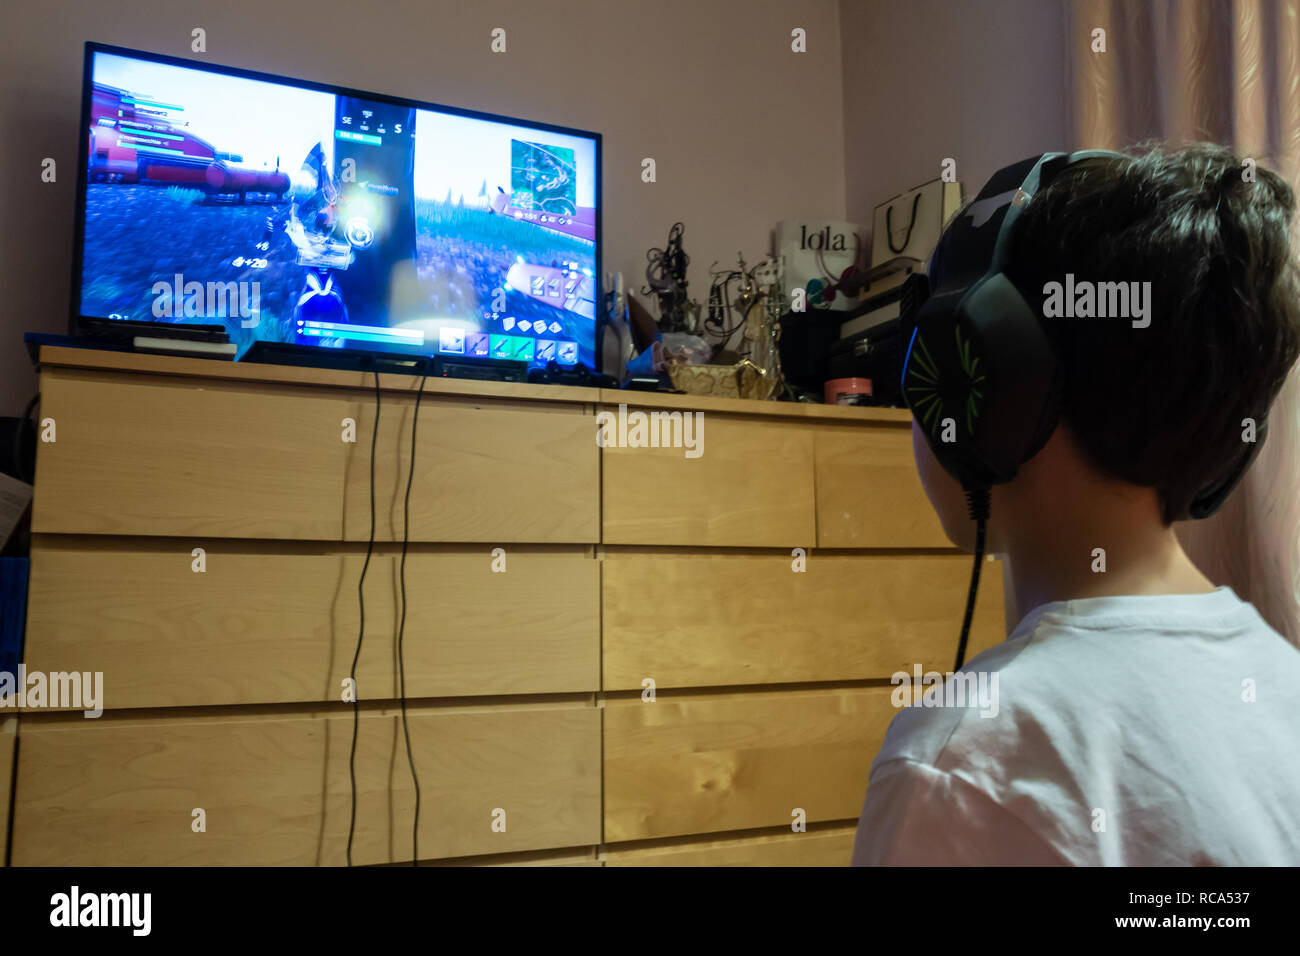 Un jeune garçon joue le jeu Fortnite sur une console de jeux dans une chambre Banque D'Images